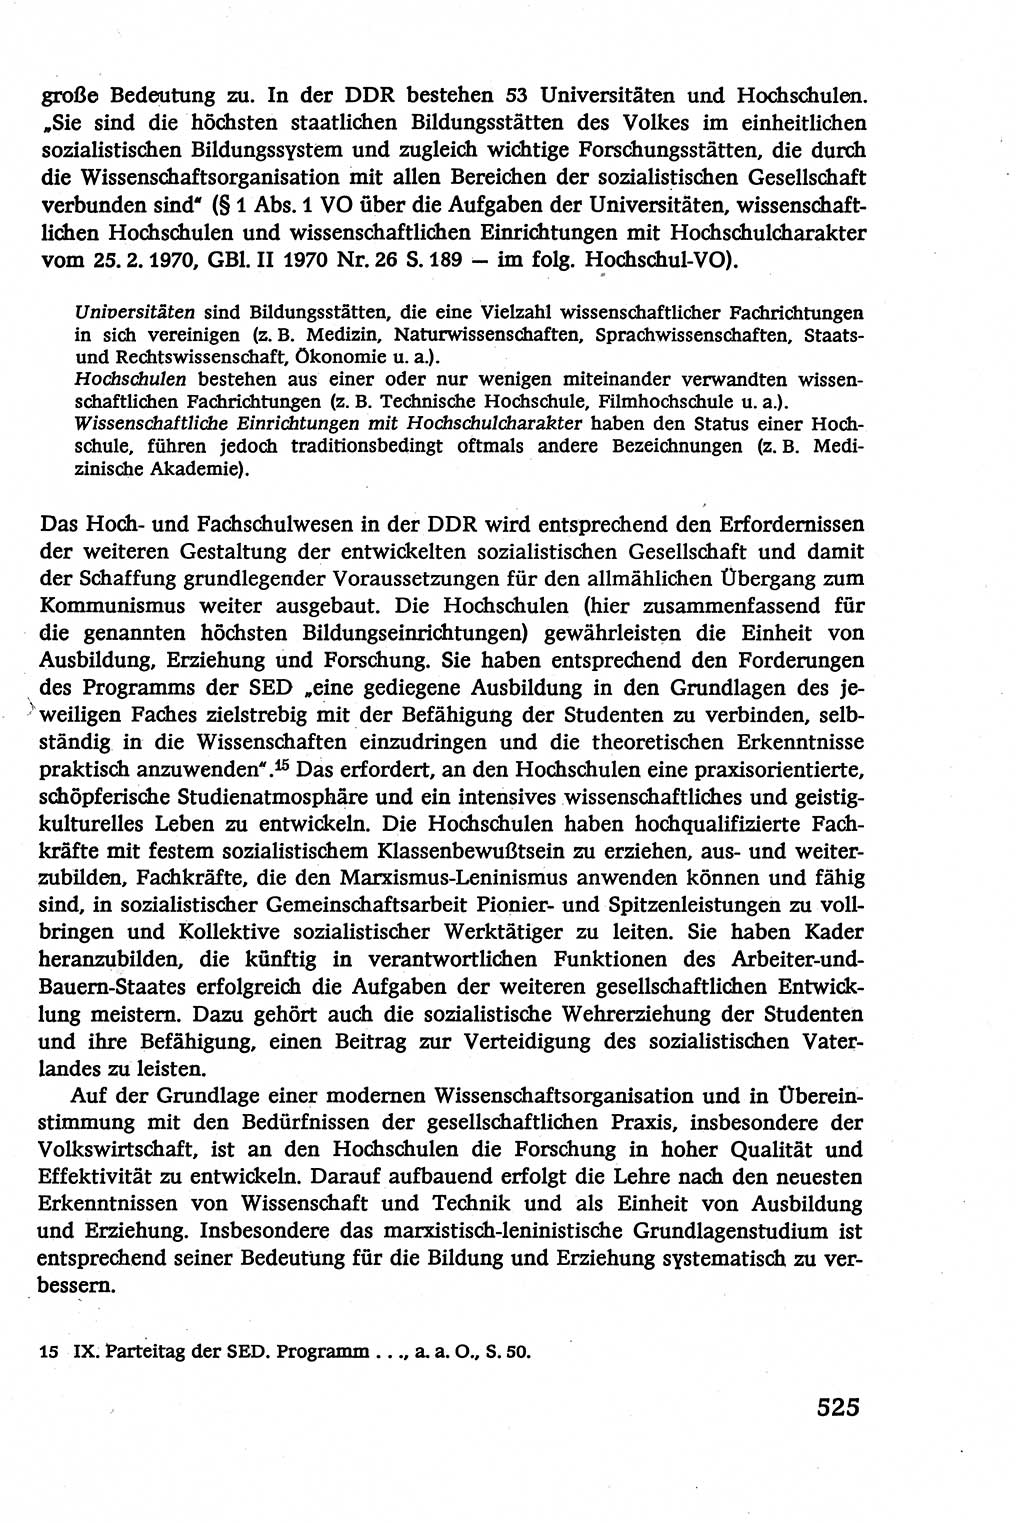 Verwaltungsrecht [Deutsche Demokratische Republik (DDR)], Lehrbuch 1979, Seite 525 (Verw.-R. DDR Lb. 1979, S. 525)